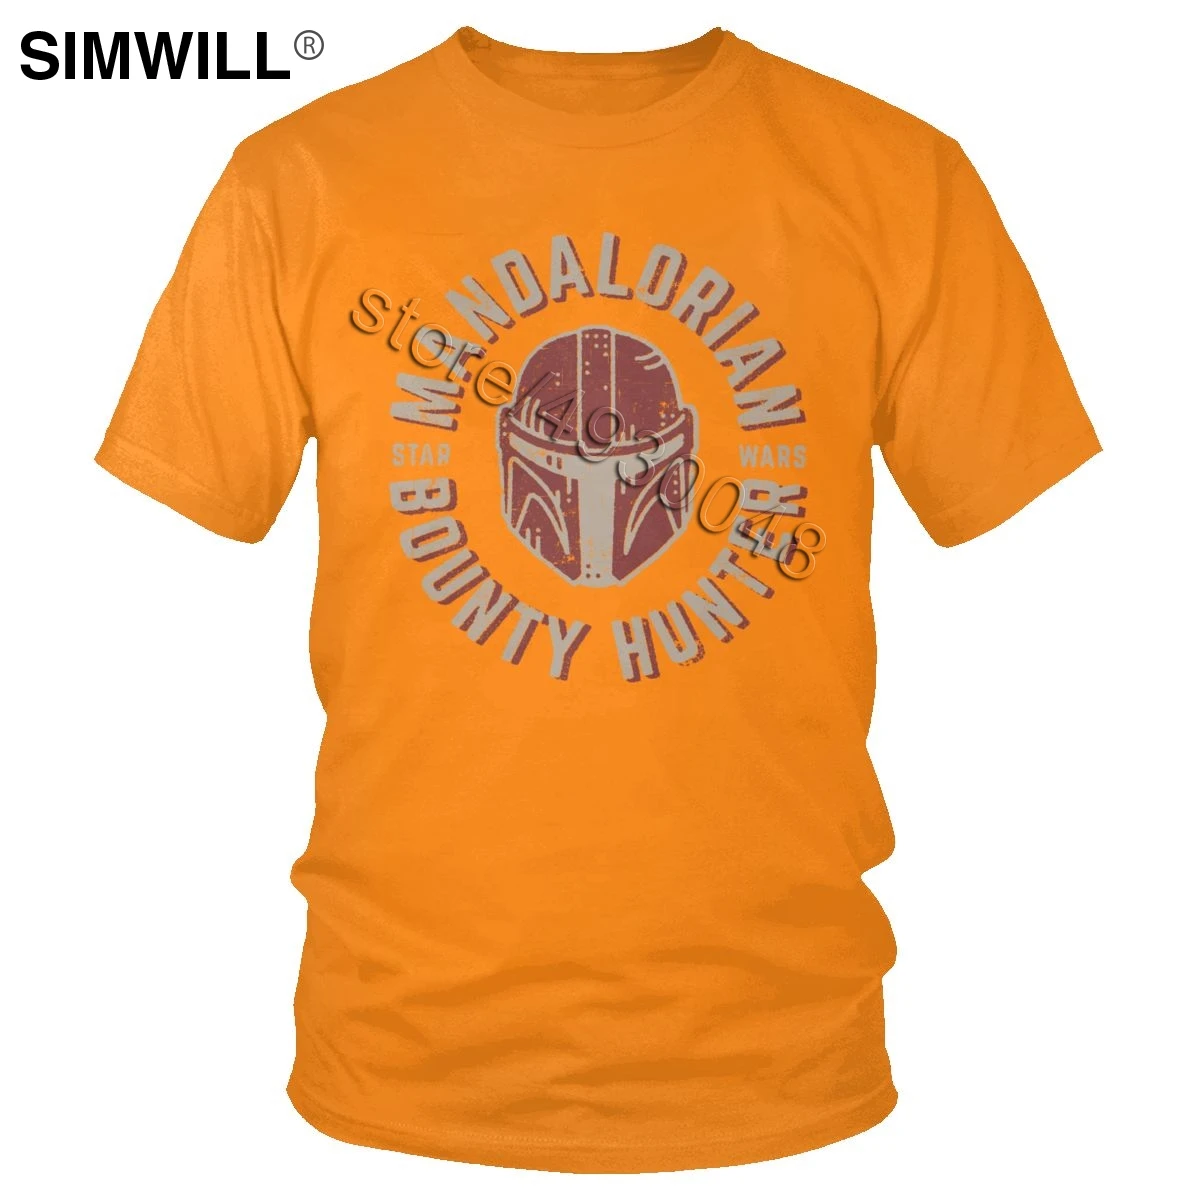 Винтажная Мужская футболка с символом мандалорского шлема, хлопковая футболка с коротким рукавом и круглым вырезом, футболка Star Wars с индивидуальным принтом, брендовые топы, подарок - Цвет: Оранжевый